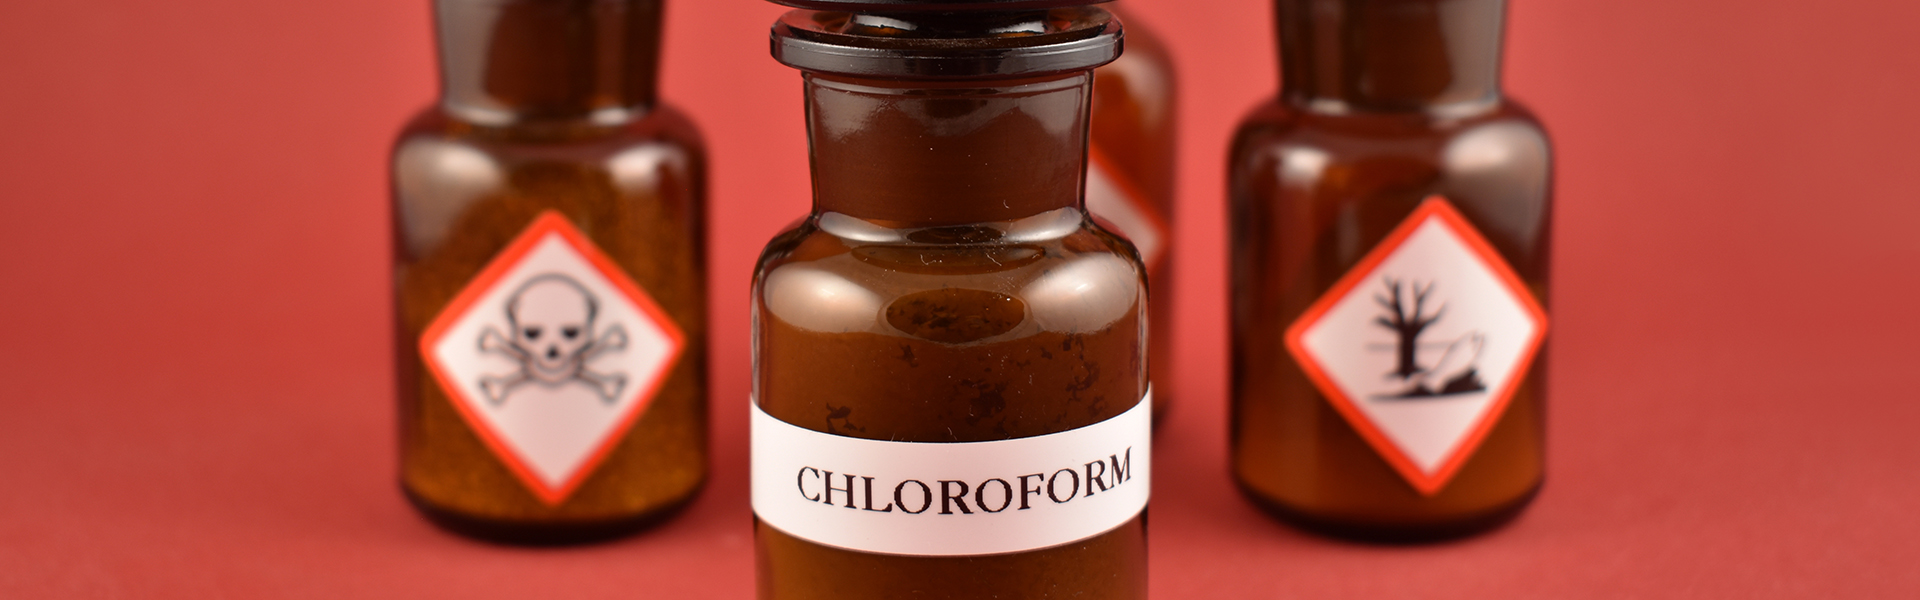 Apothekerfläschchen mit Aufdruck "Chloroform" und Warnzeichen